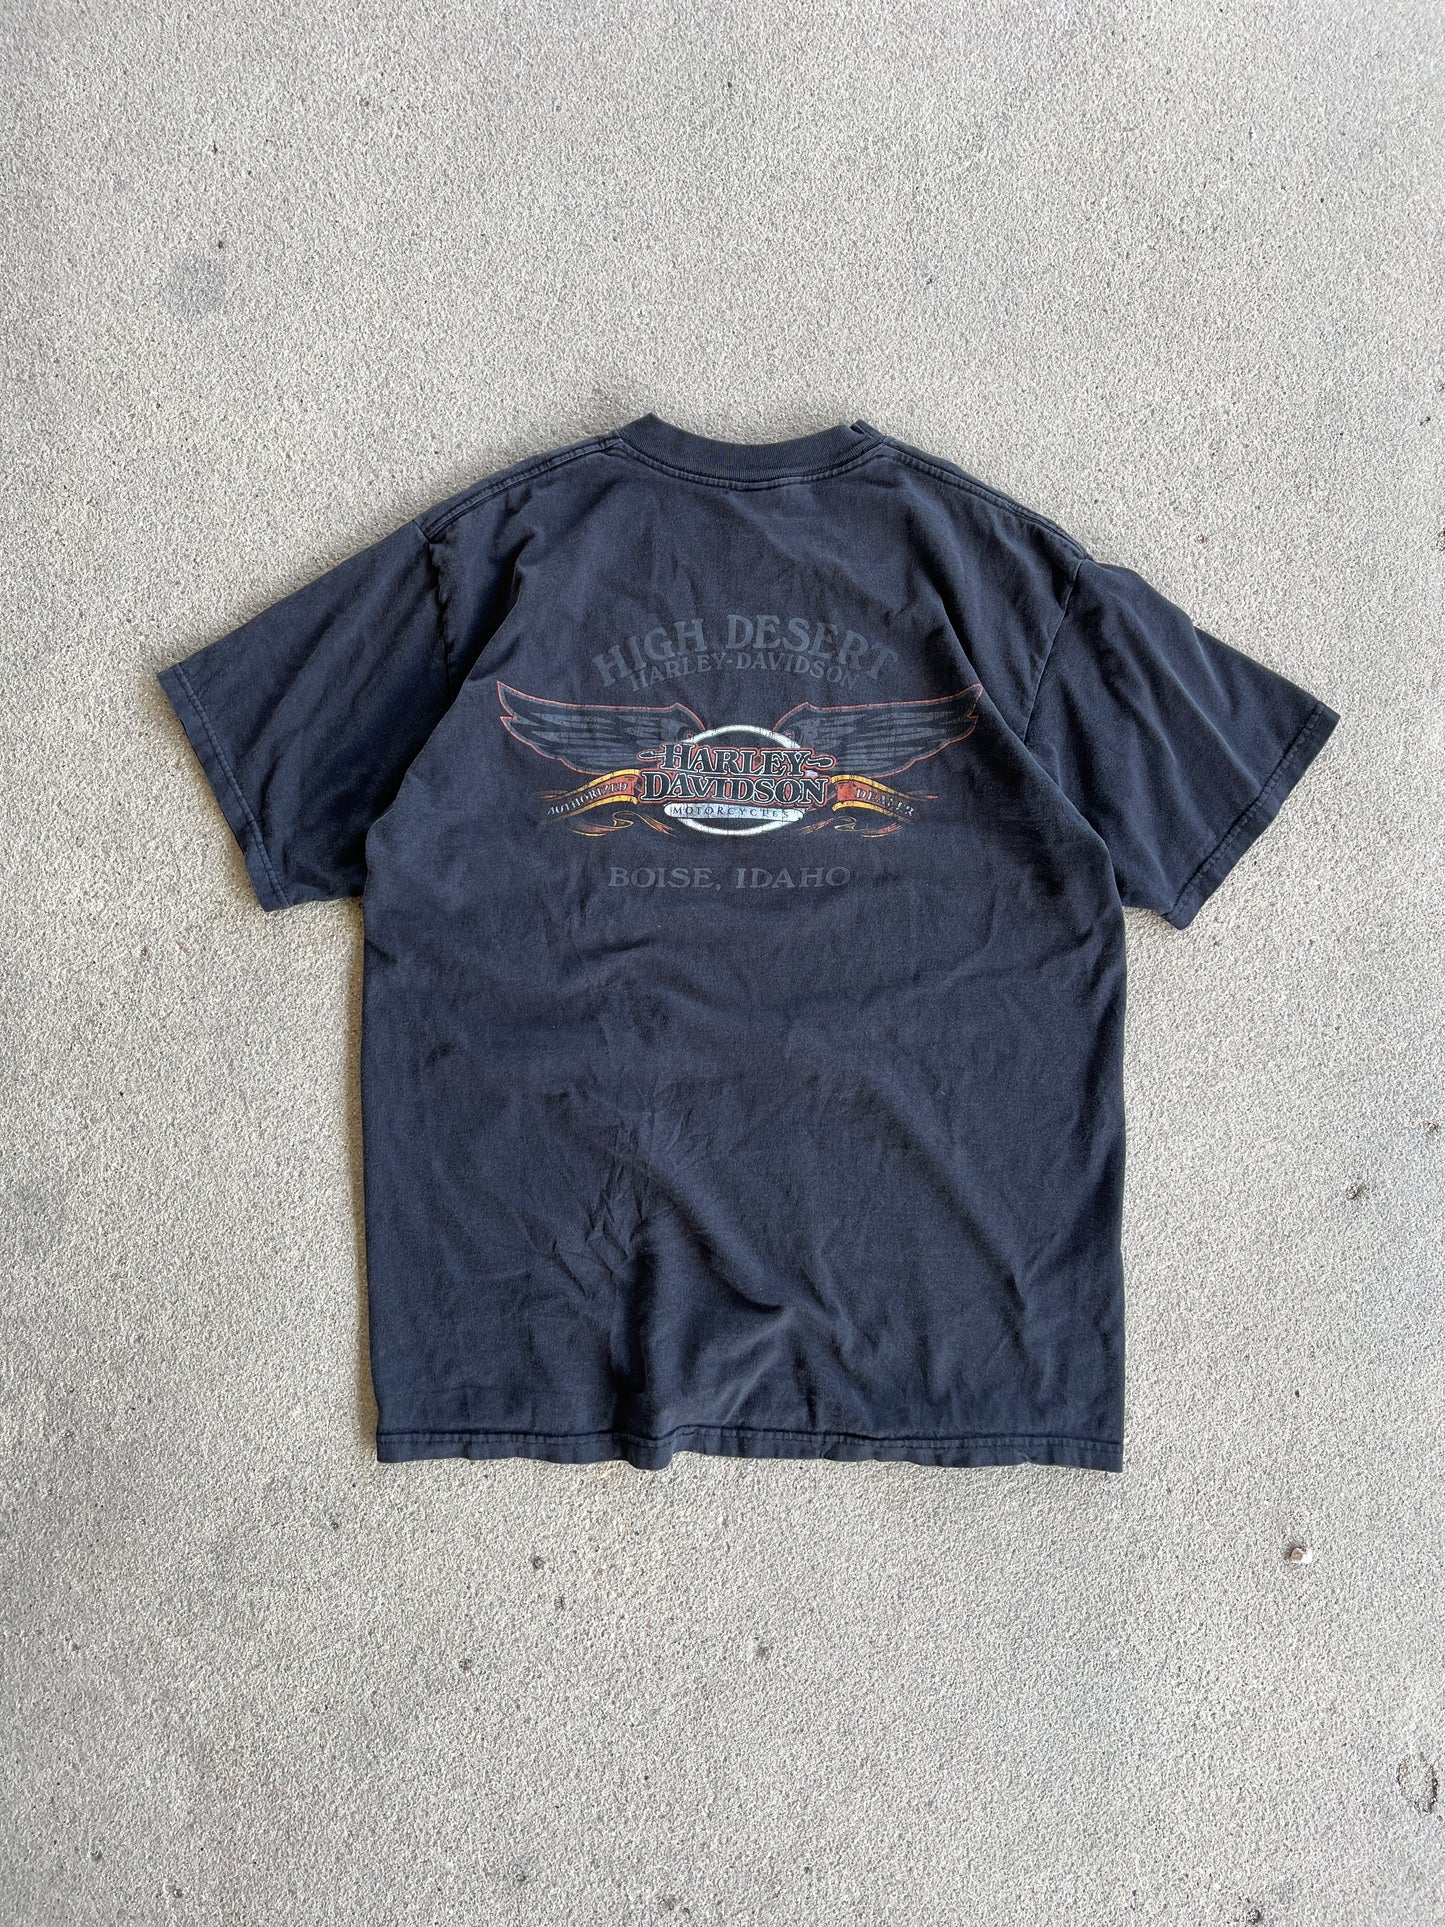 Vintage Black Harley Davidson Shirt - L